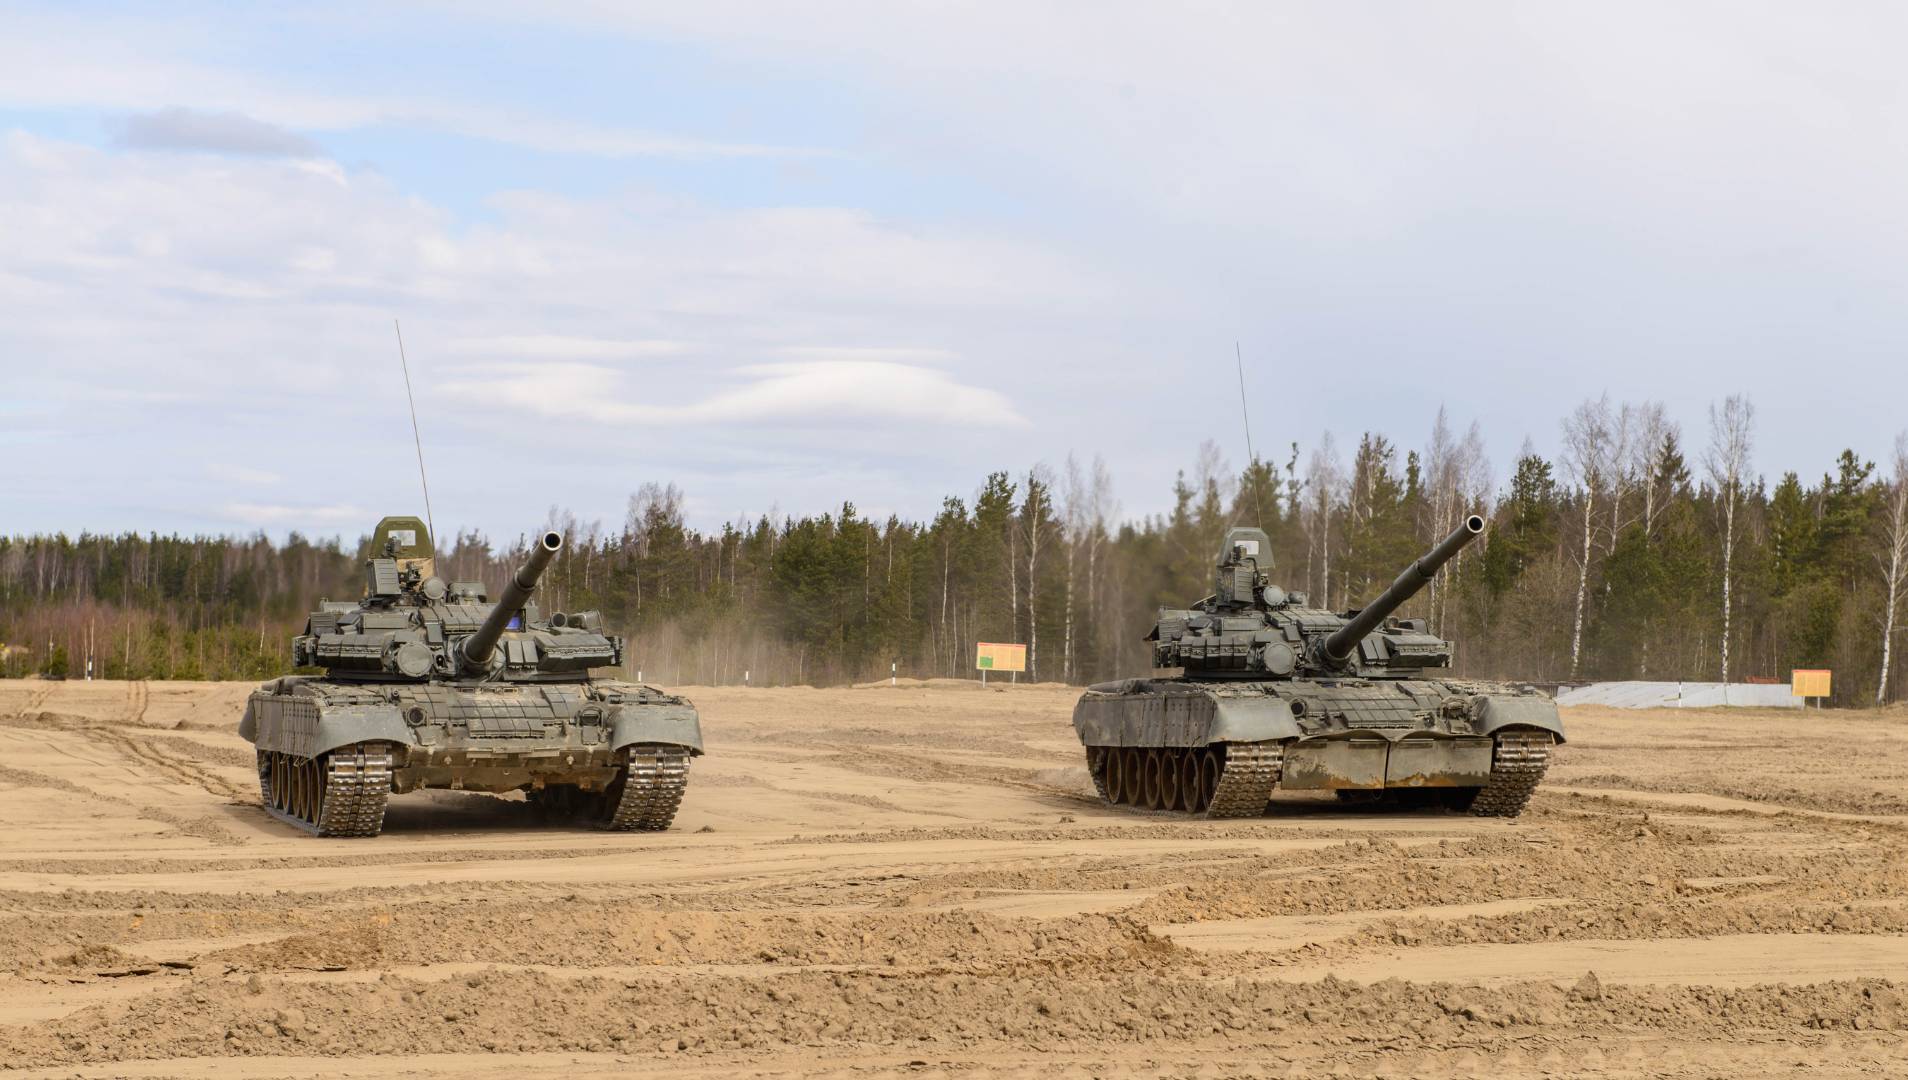 Tanks crossing open field